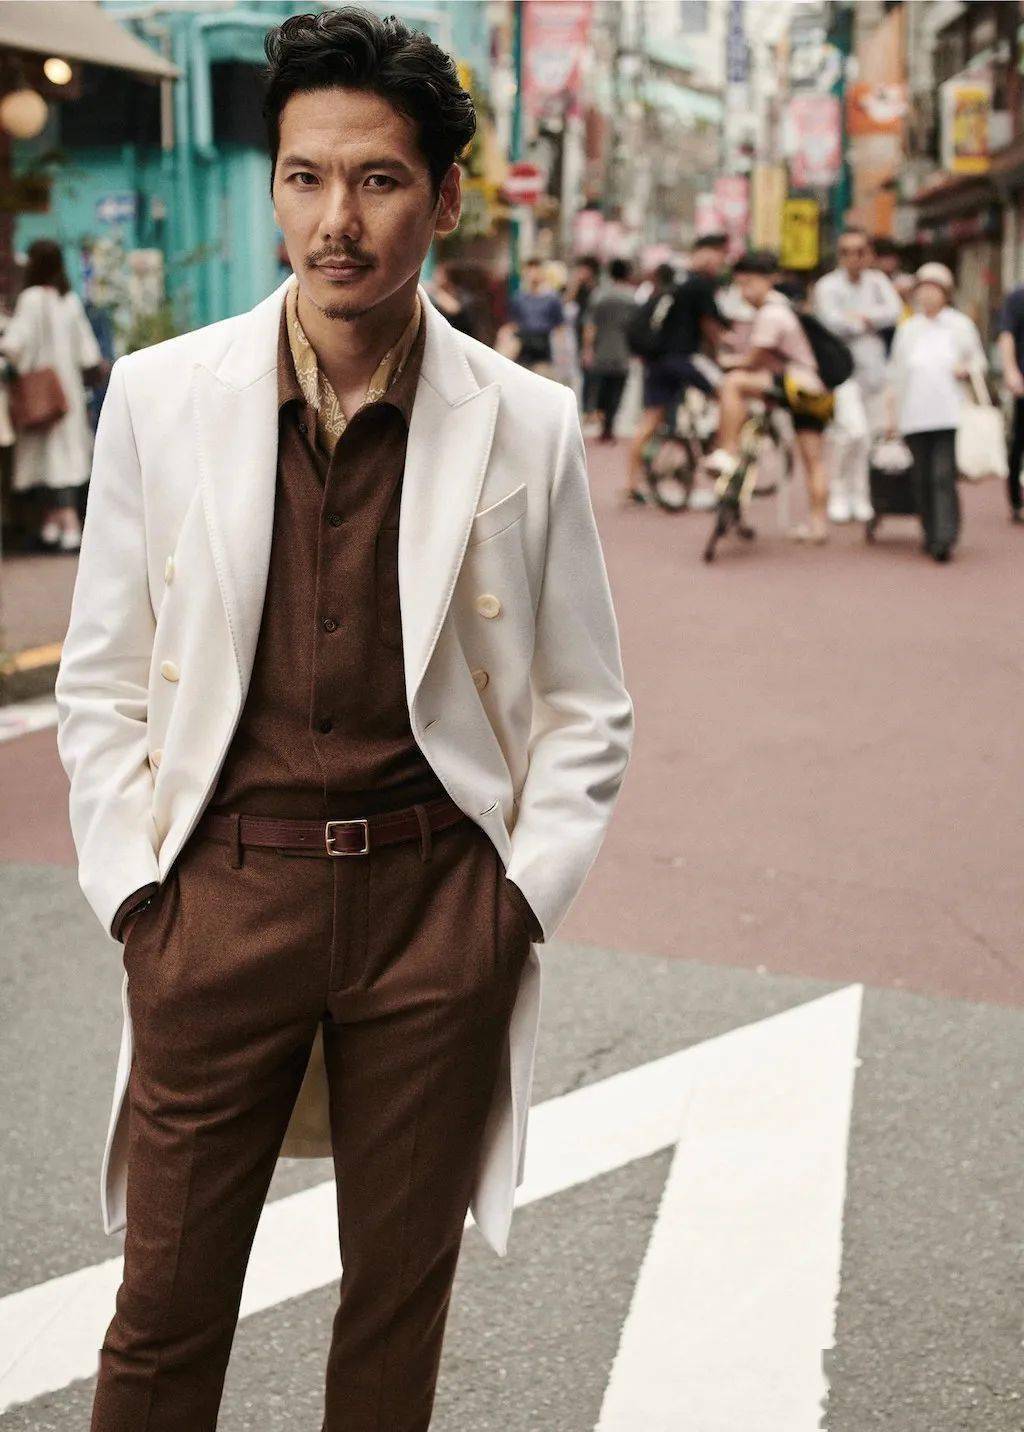 日本最时尚的44岁大叔没有小鲜肉的长相却穿得比欧美人还雅痞